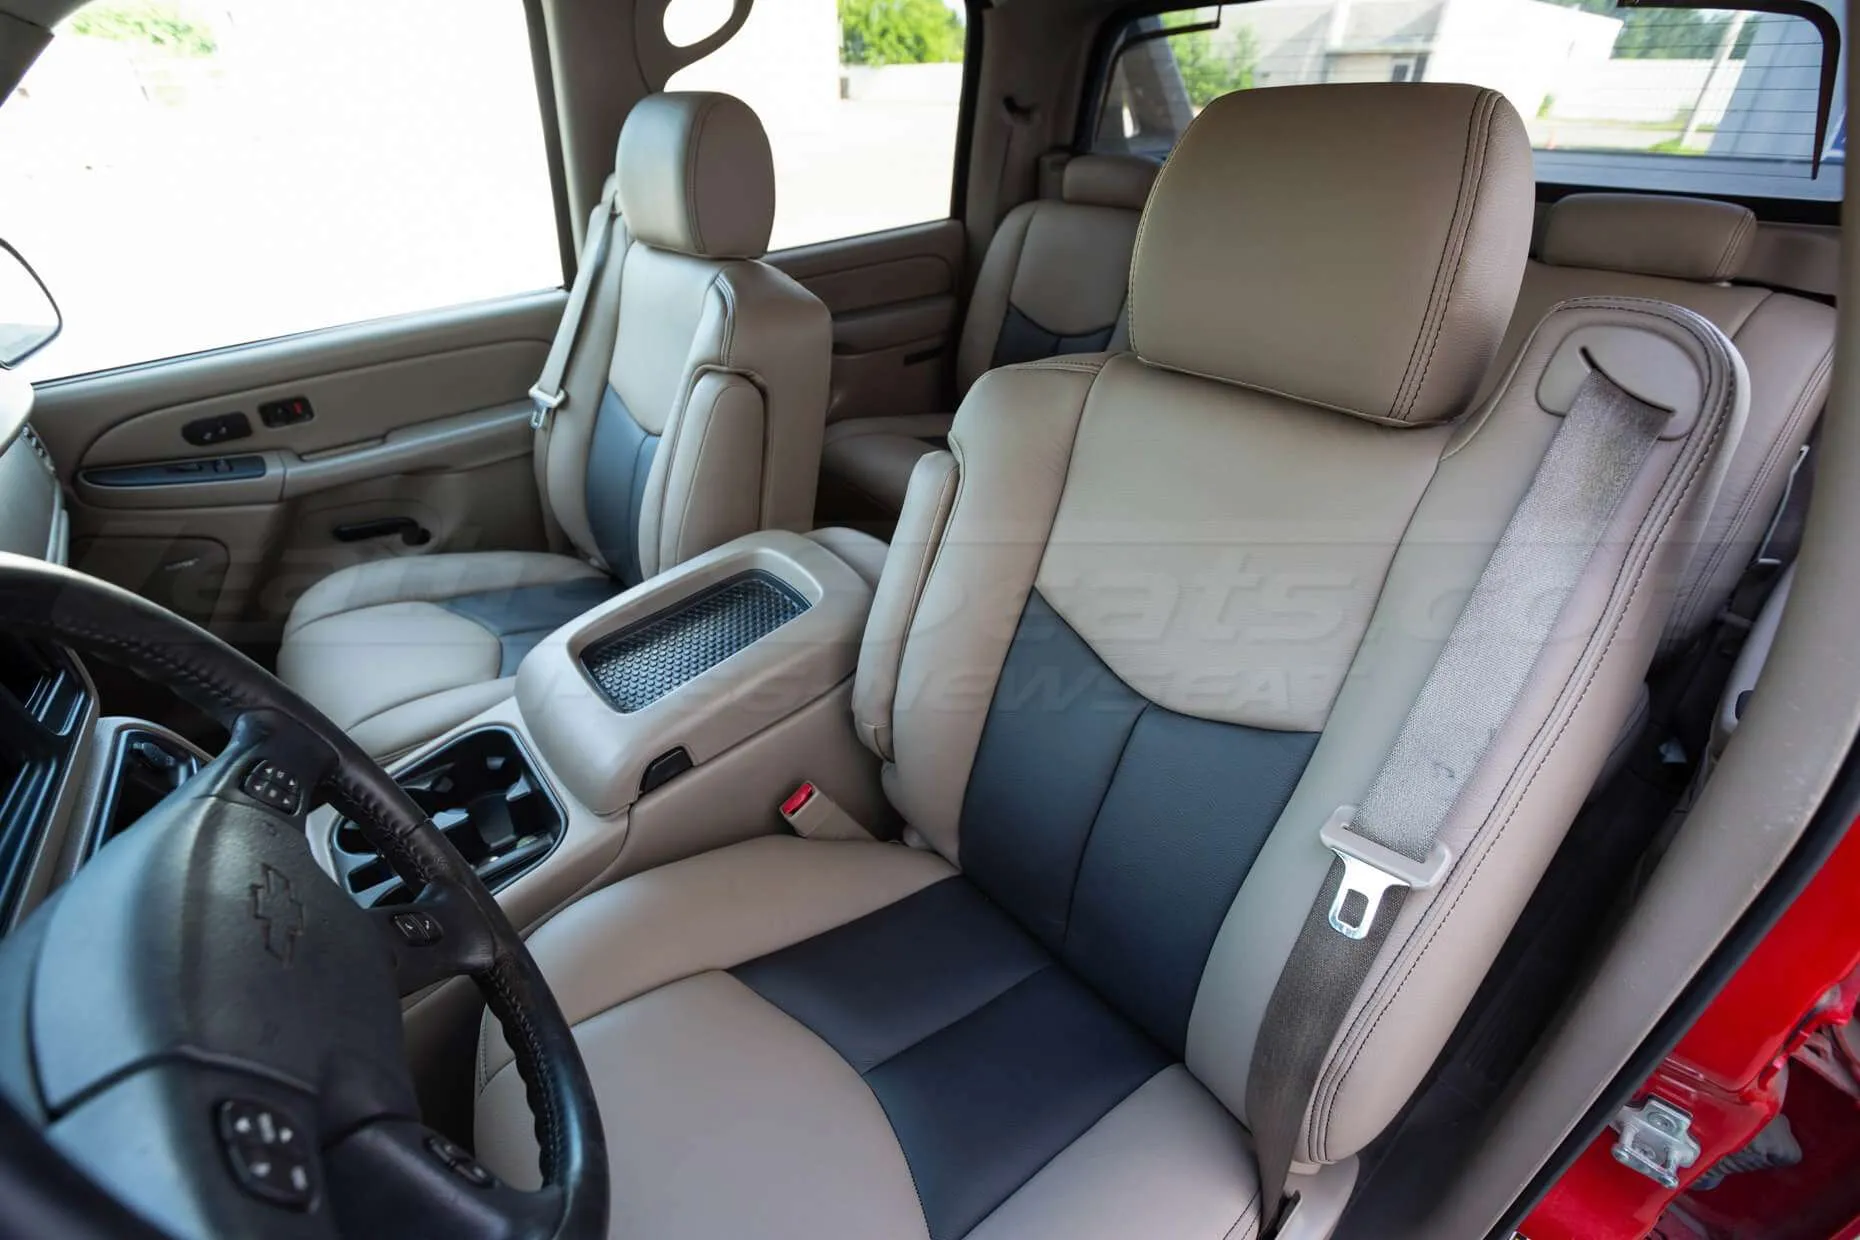 03-06 Chevrolet Avalanche Installed Upholstery Kit - Desert & Black - Front Drive Seat